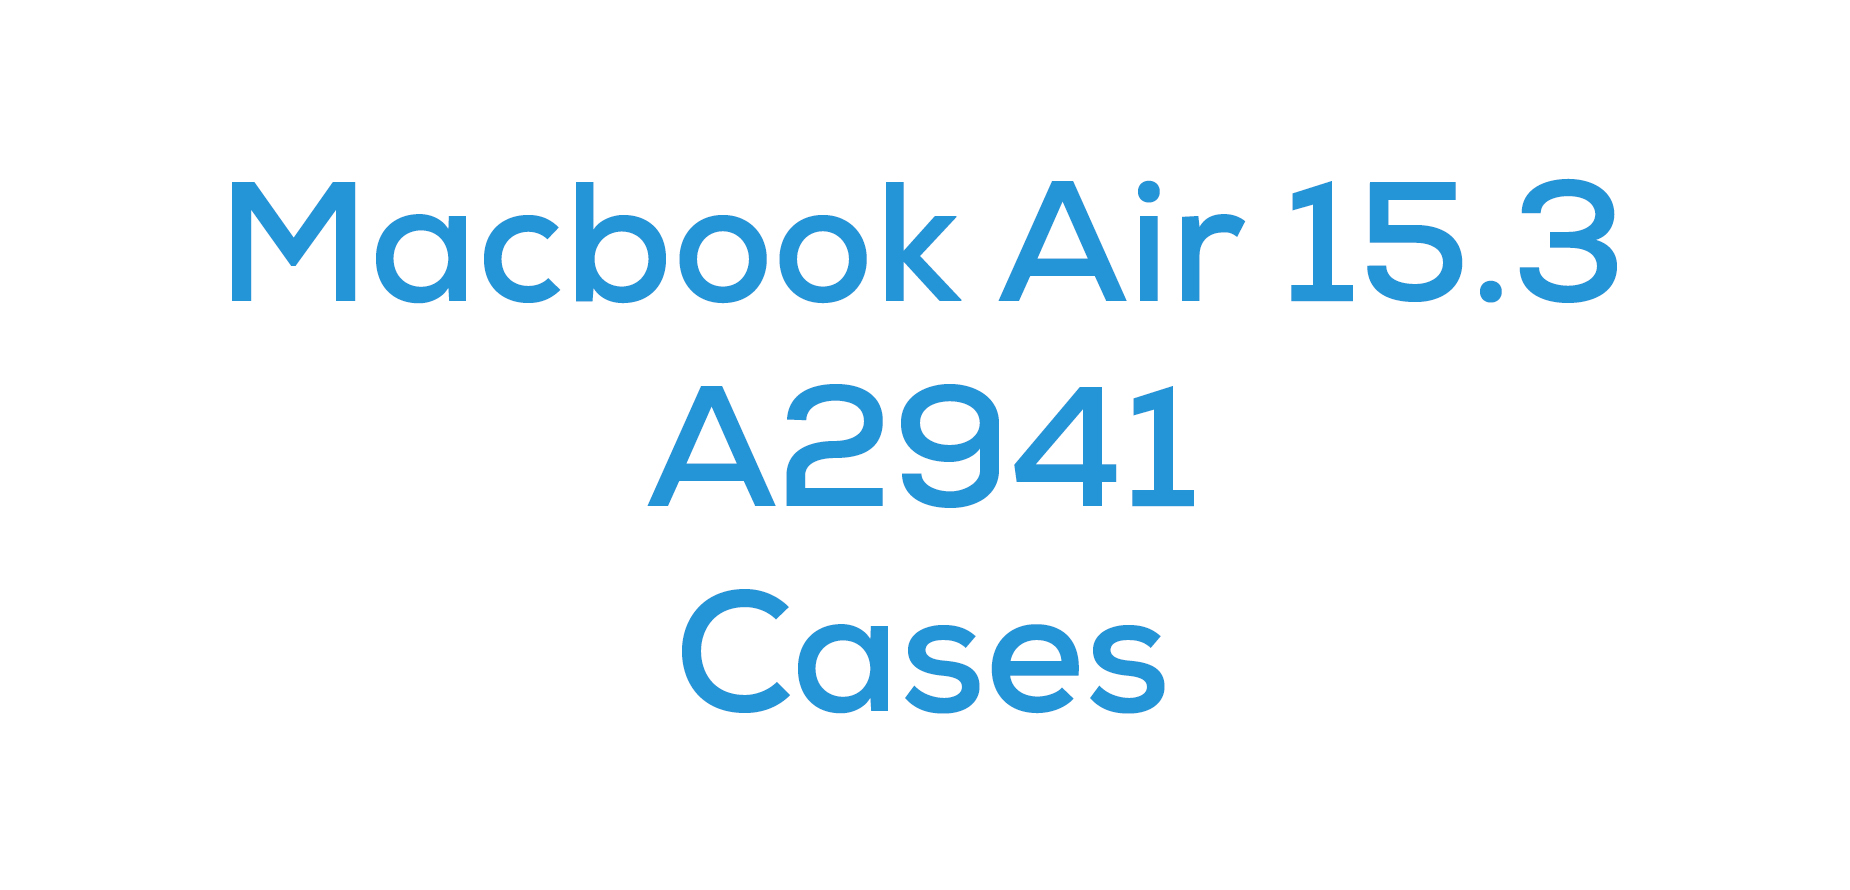 Macbook Air 15.3 (A2941)